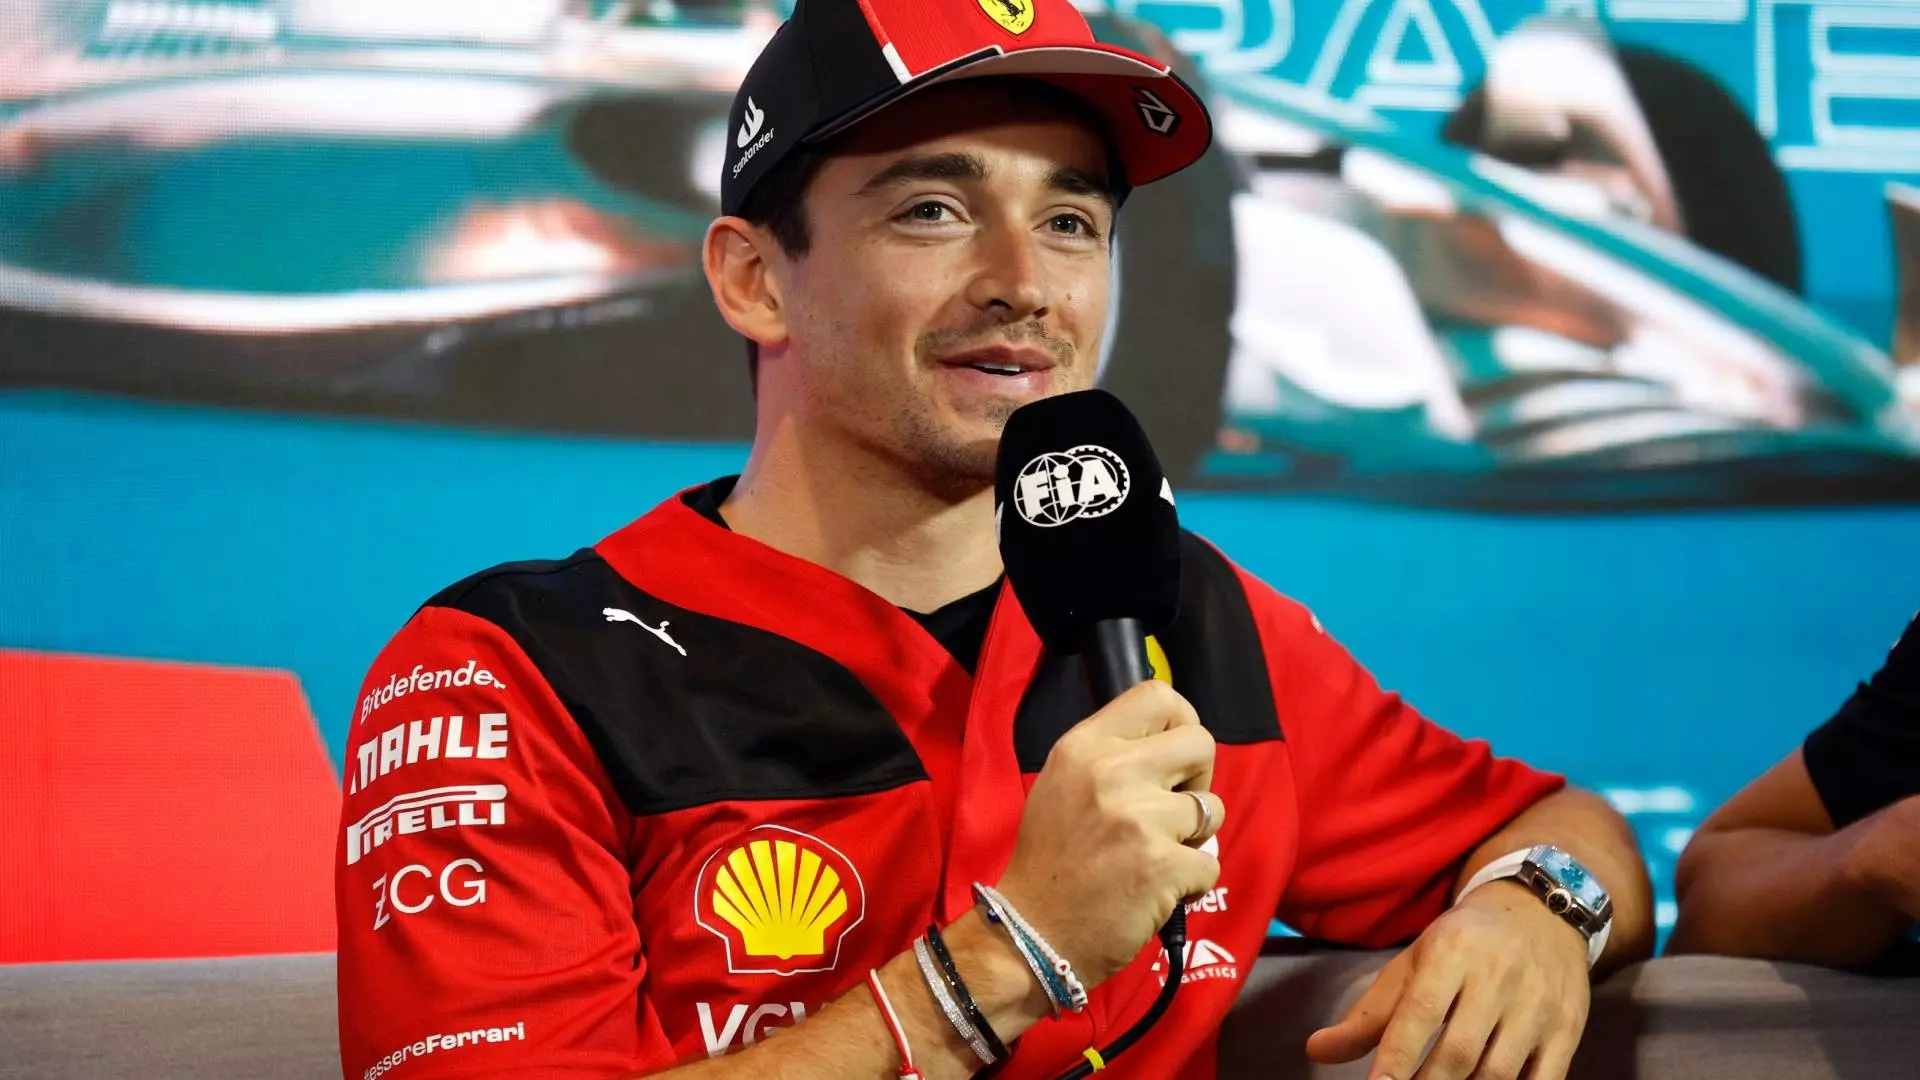 F1, Ferrari: Charles Leclerc sincero sulla questione rinnovo